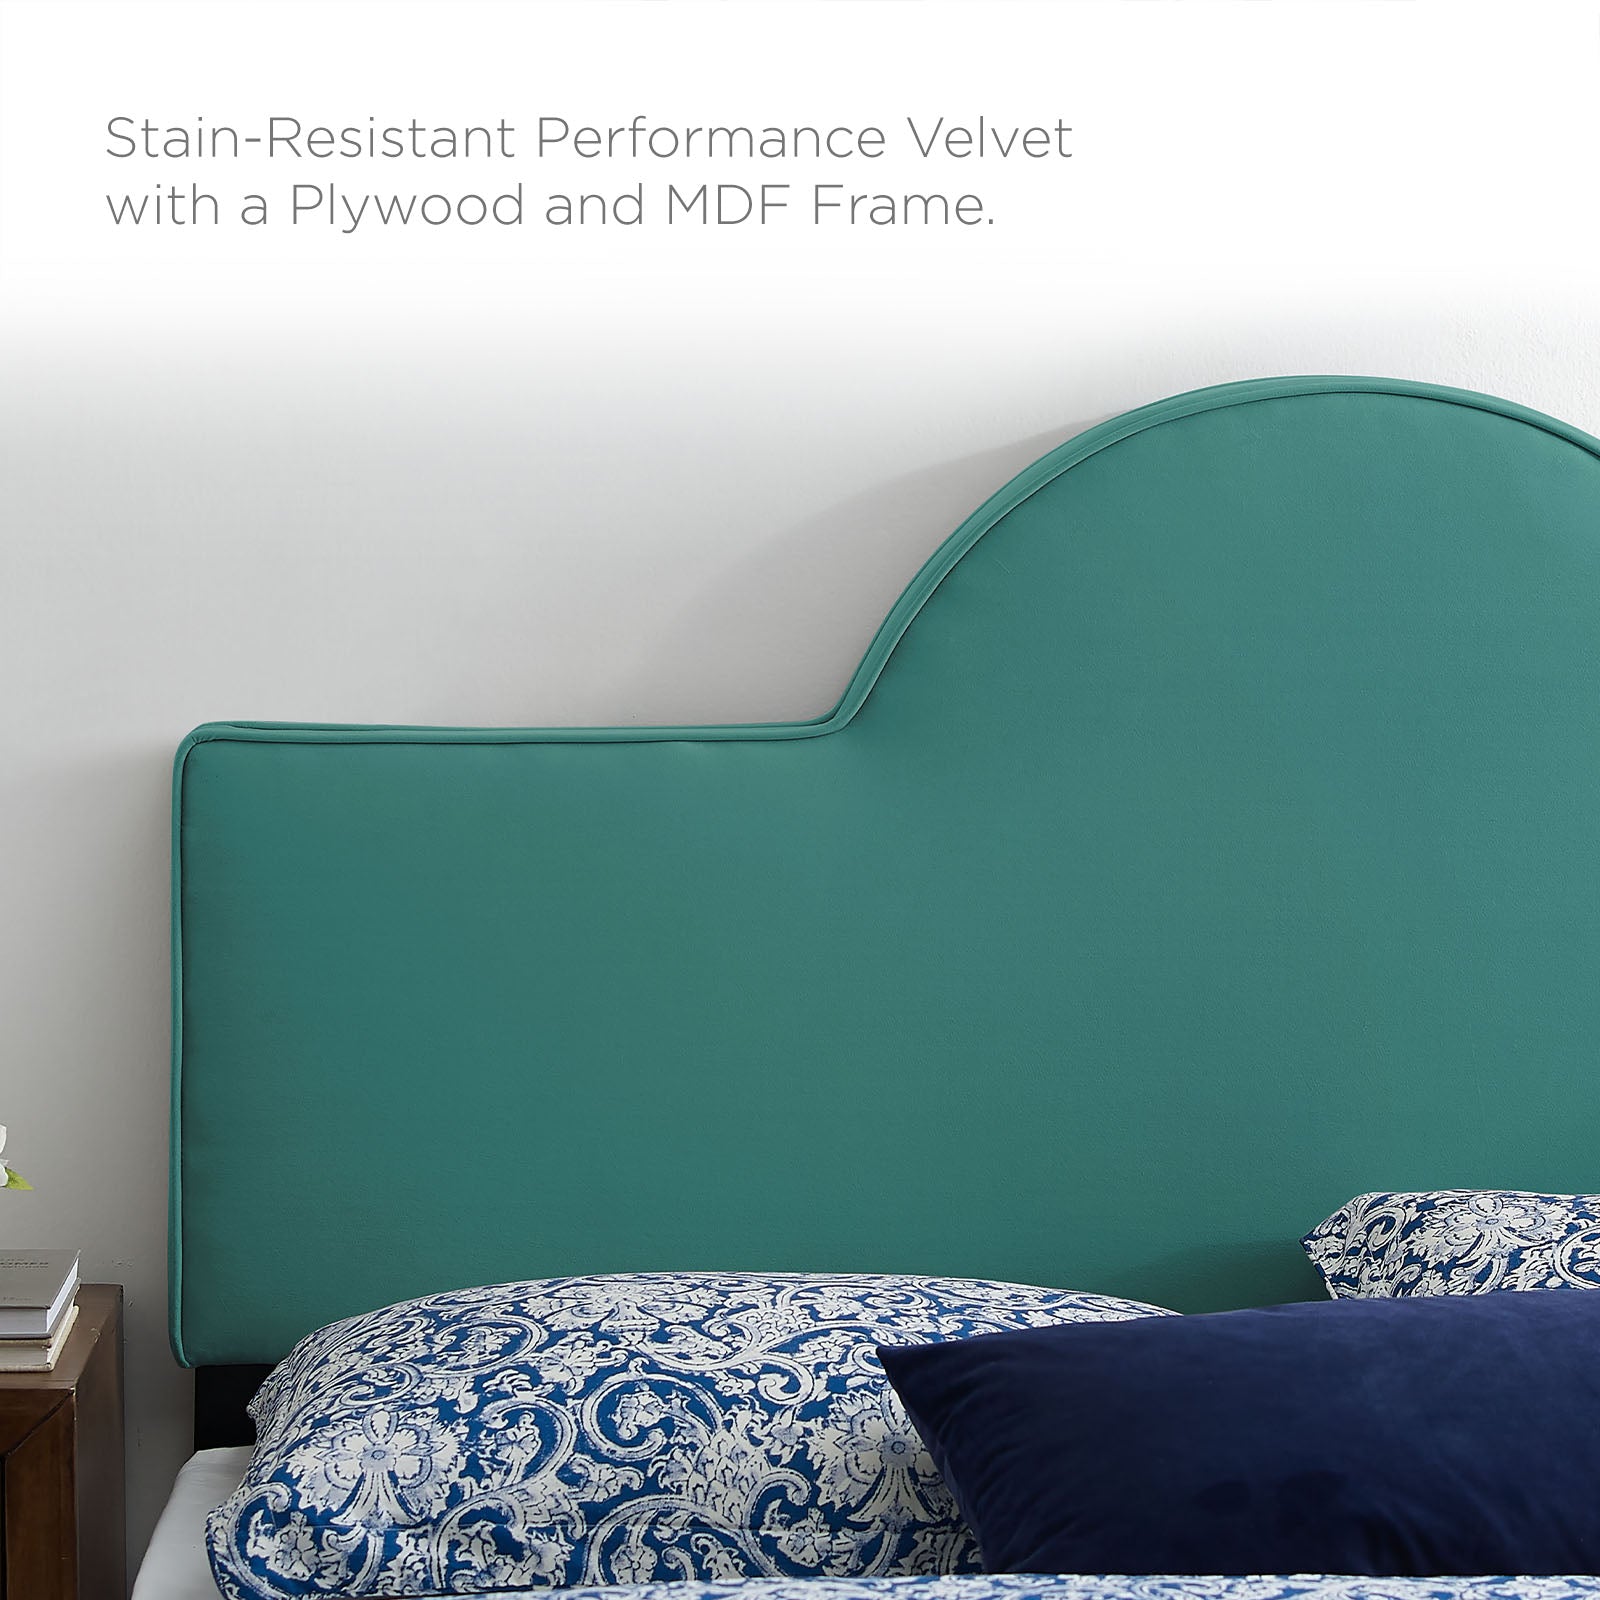 Soleil Performance Velvet King Bed - East Shore Modern Home Furnishings